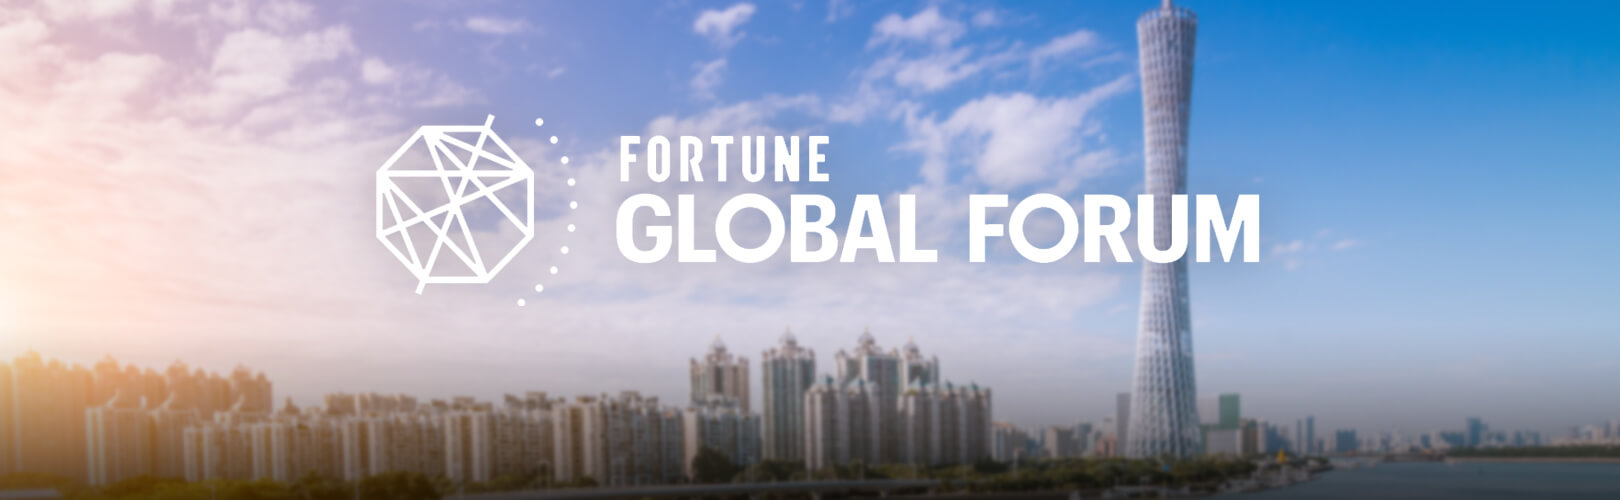 shunee-yee-fortune-global-forum2017-